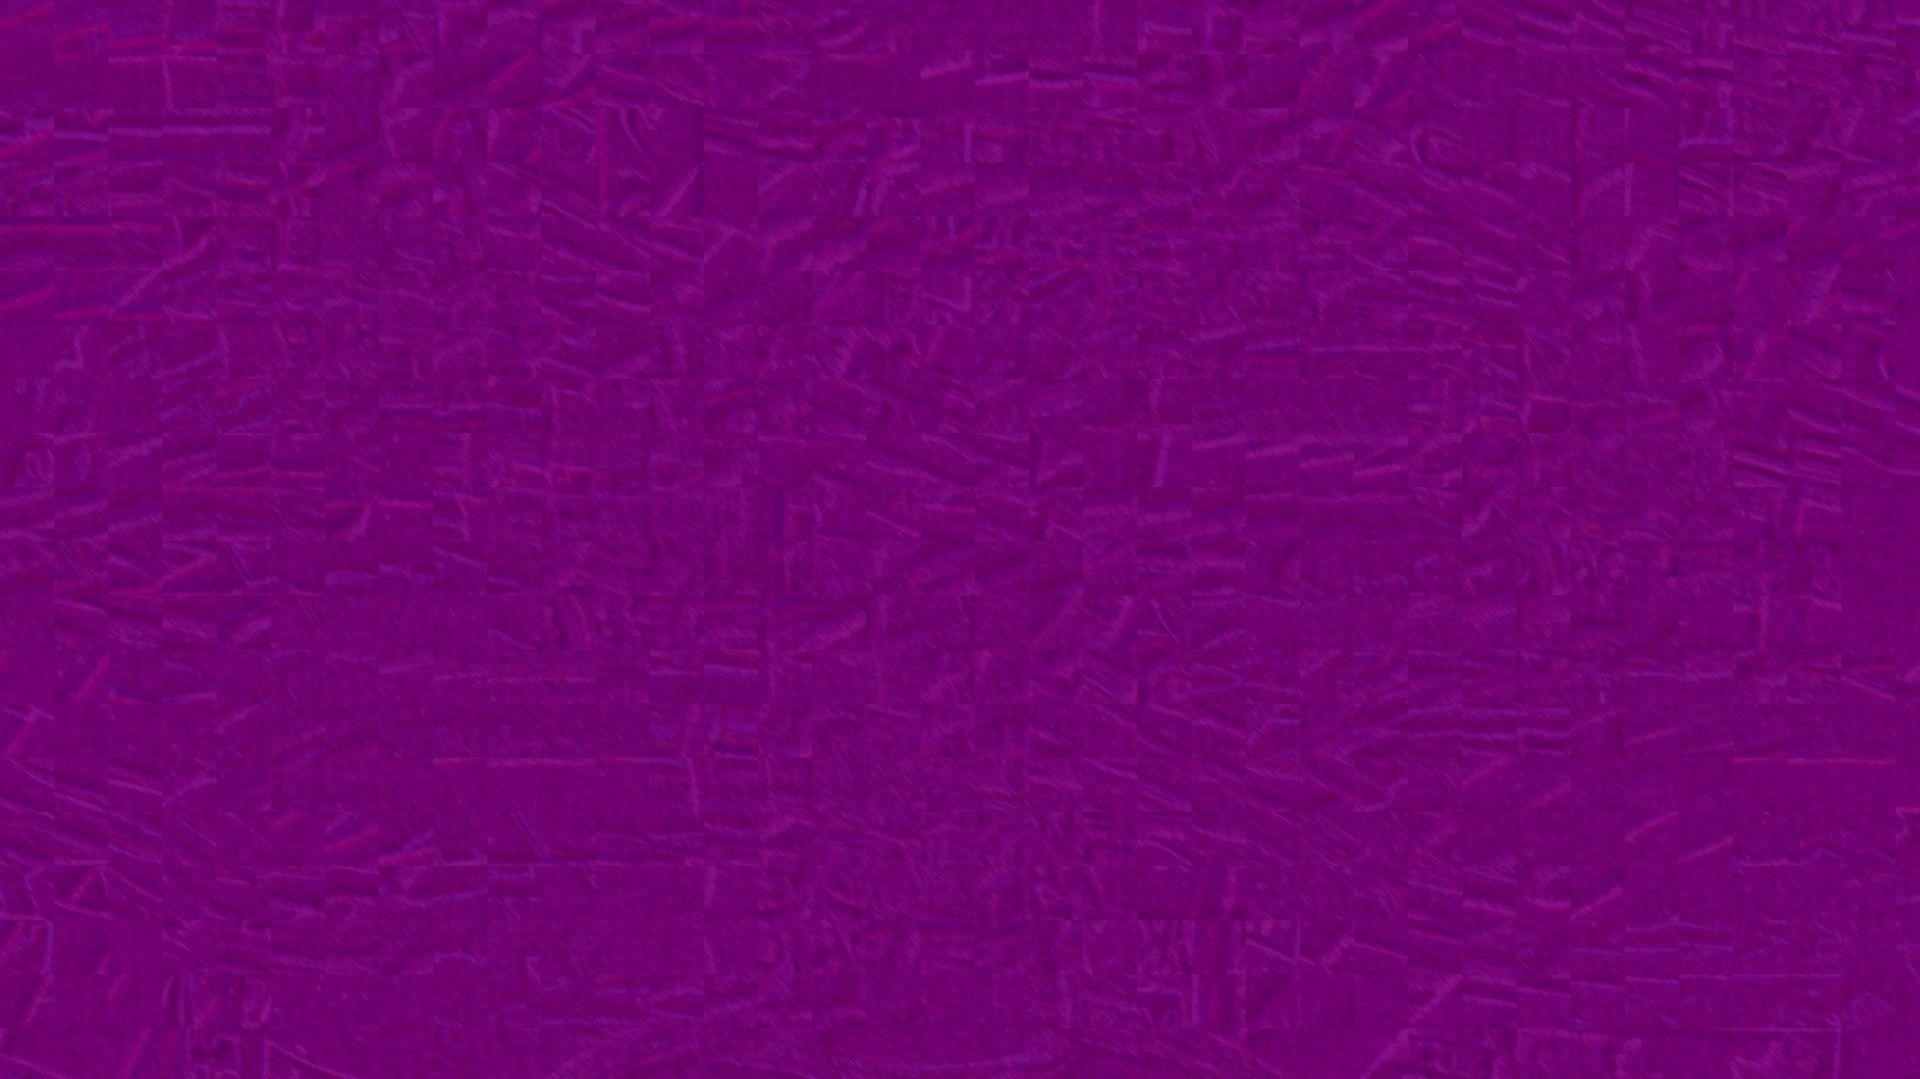 1920x1079 Hình nền màu tím có kết cấu miễn phí Kho ảnh - Miền công cộng